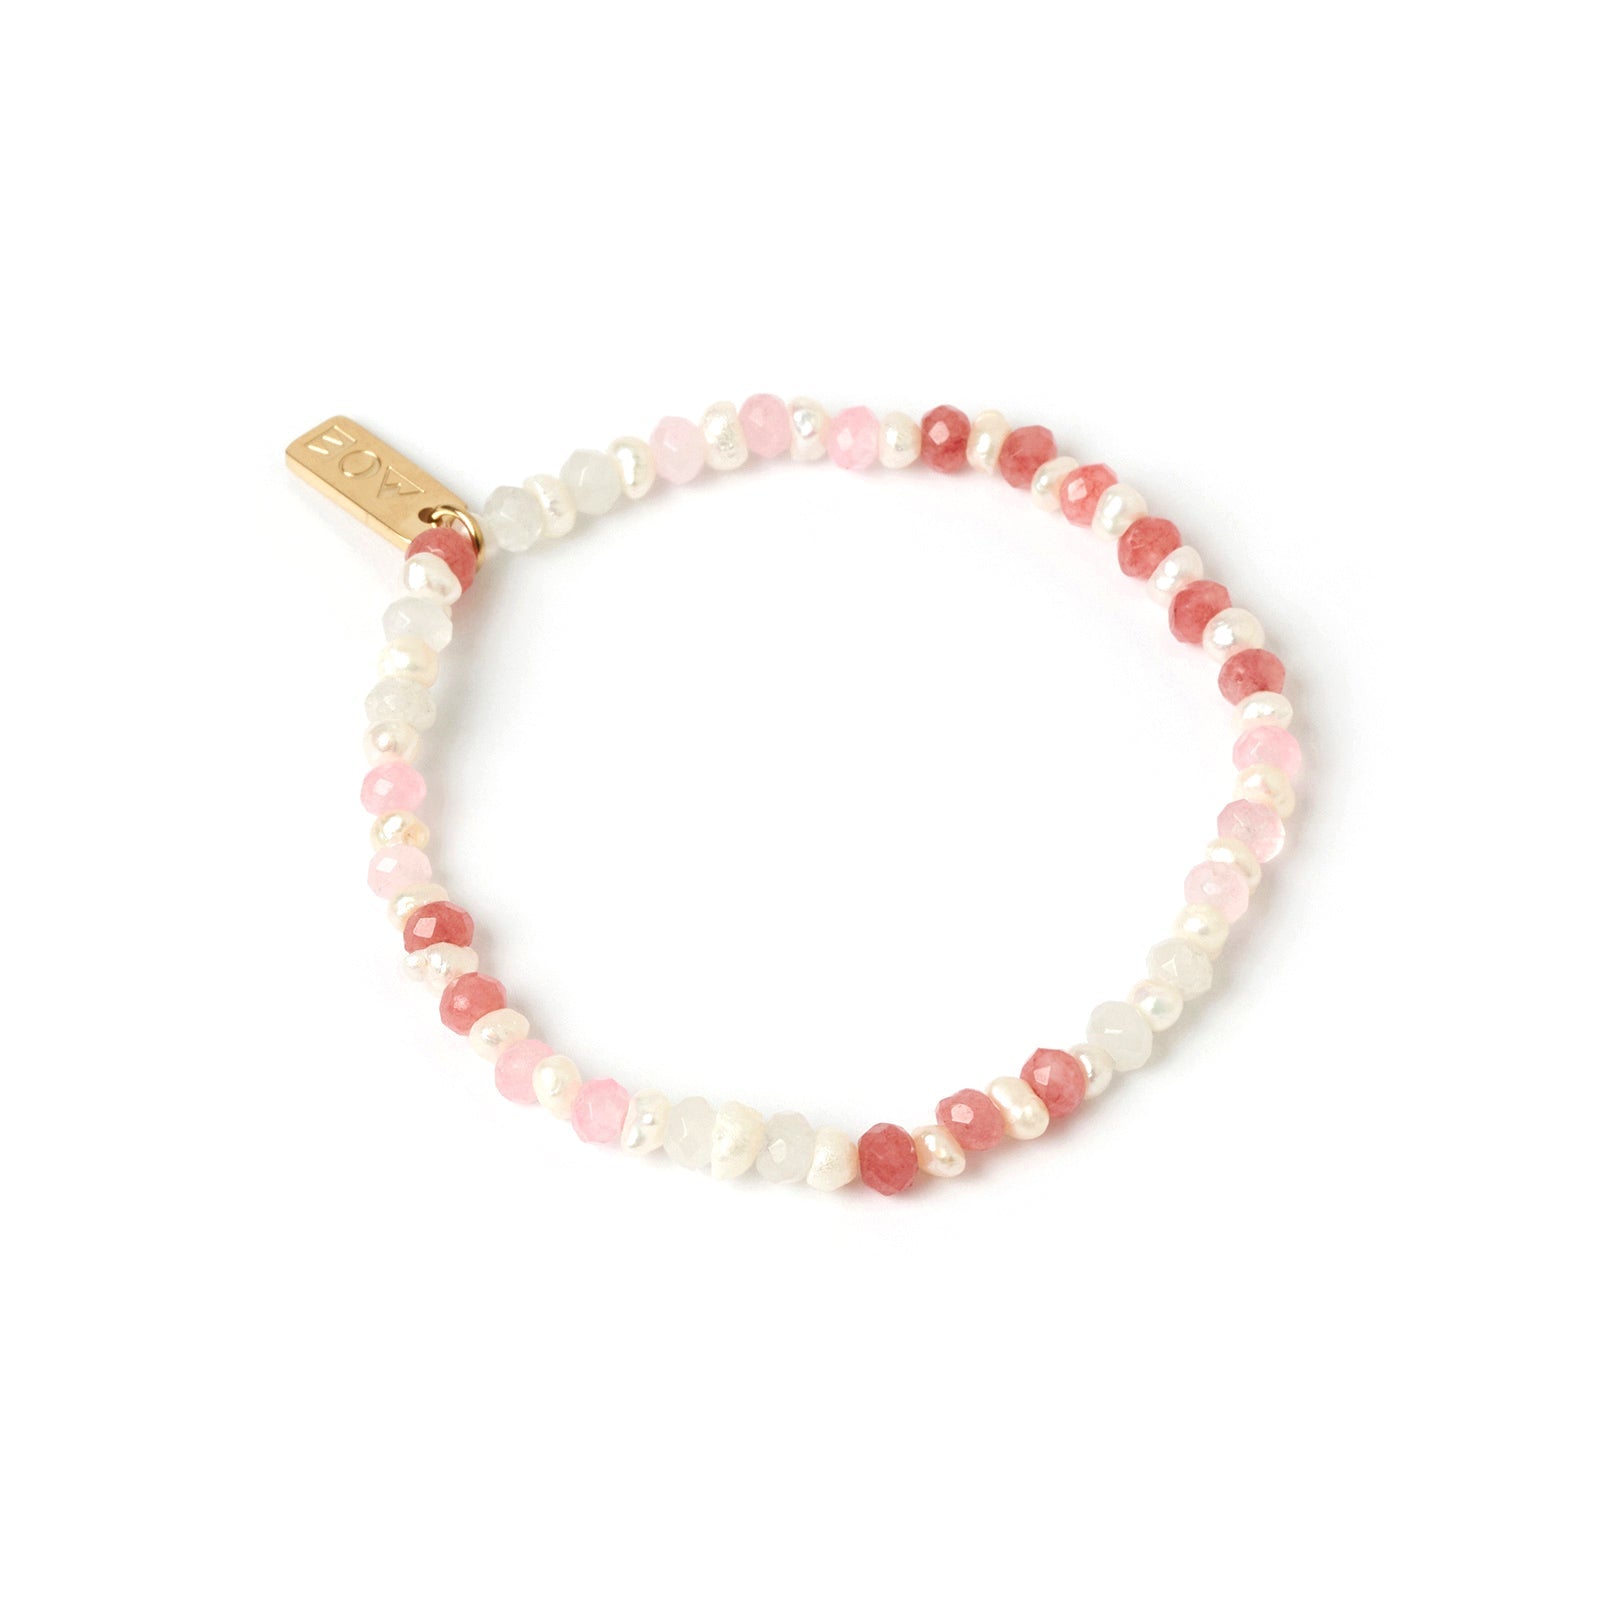 Bloom Pearl and Gemstone Bracelet - Watermelon